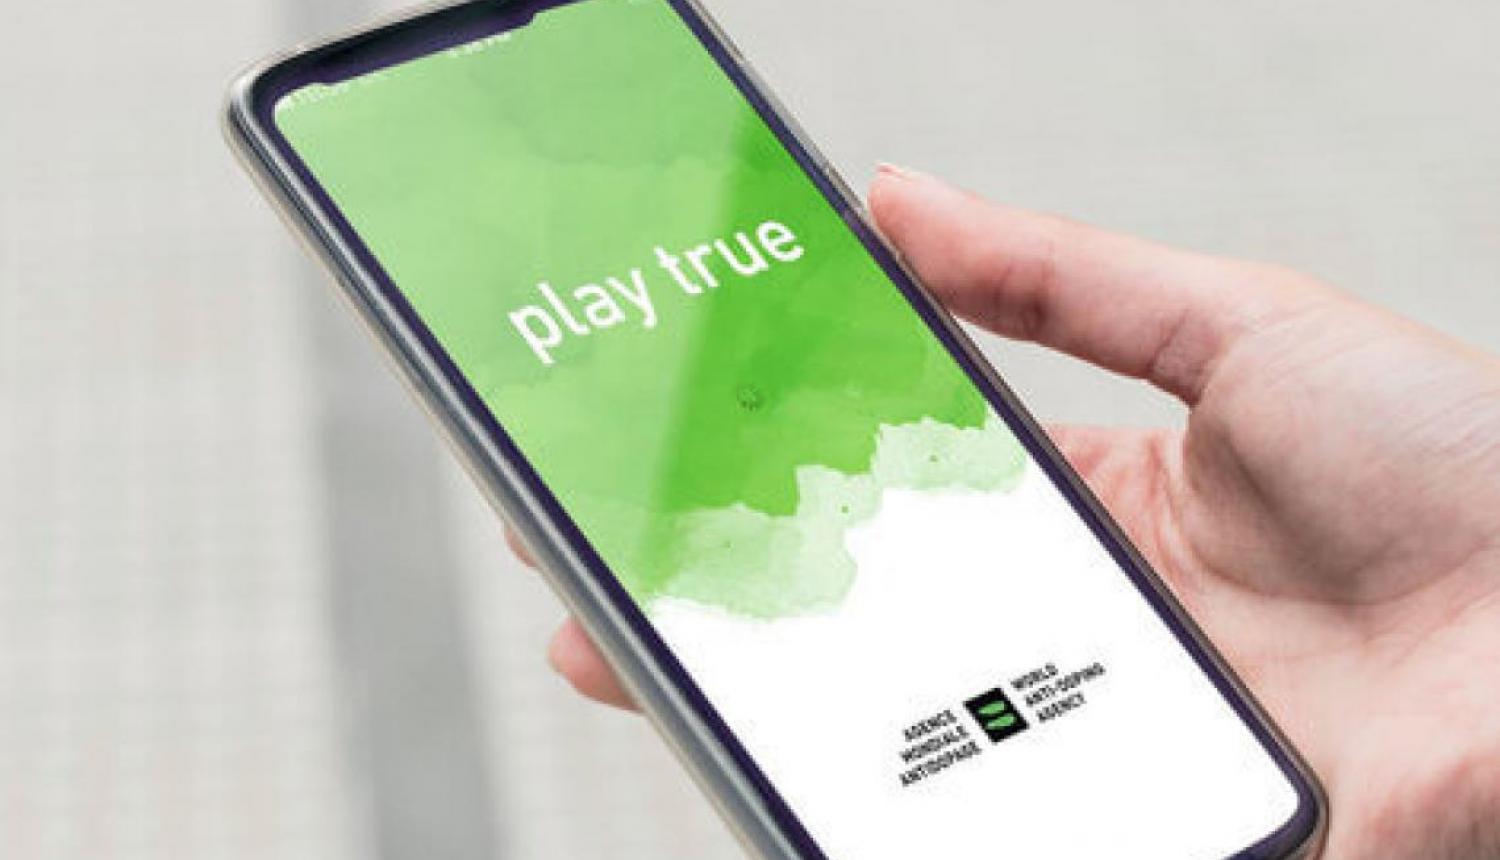 Cilvēka plauksta, kas rokās tur viedtālruni, kura ekrānā ir attēlots attēls ar tekstu "Play True"